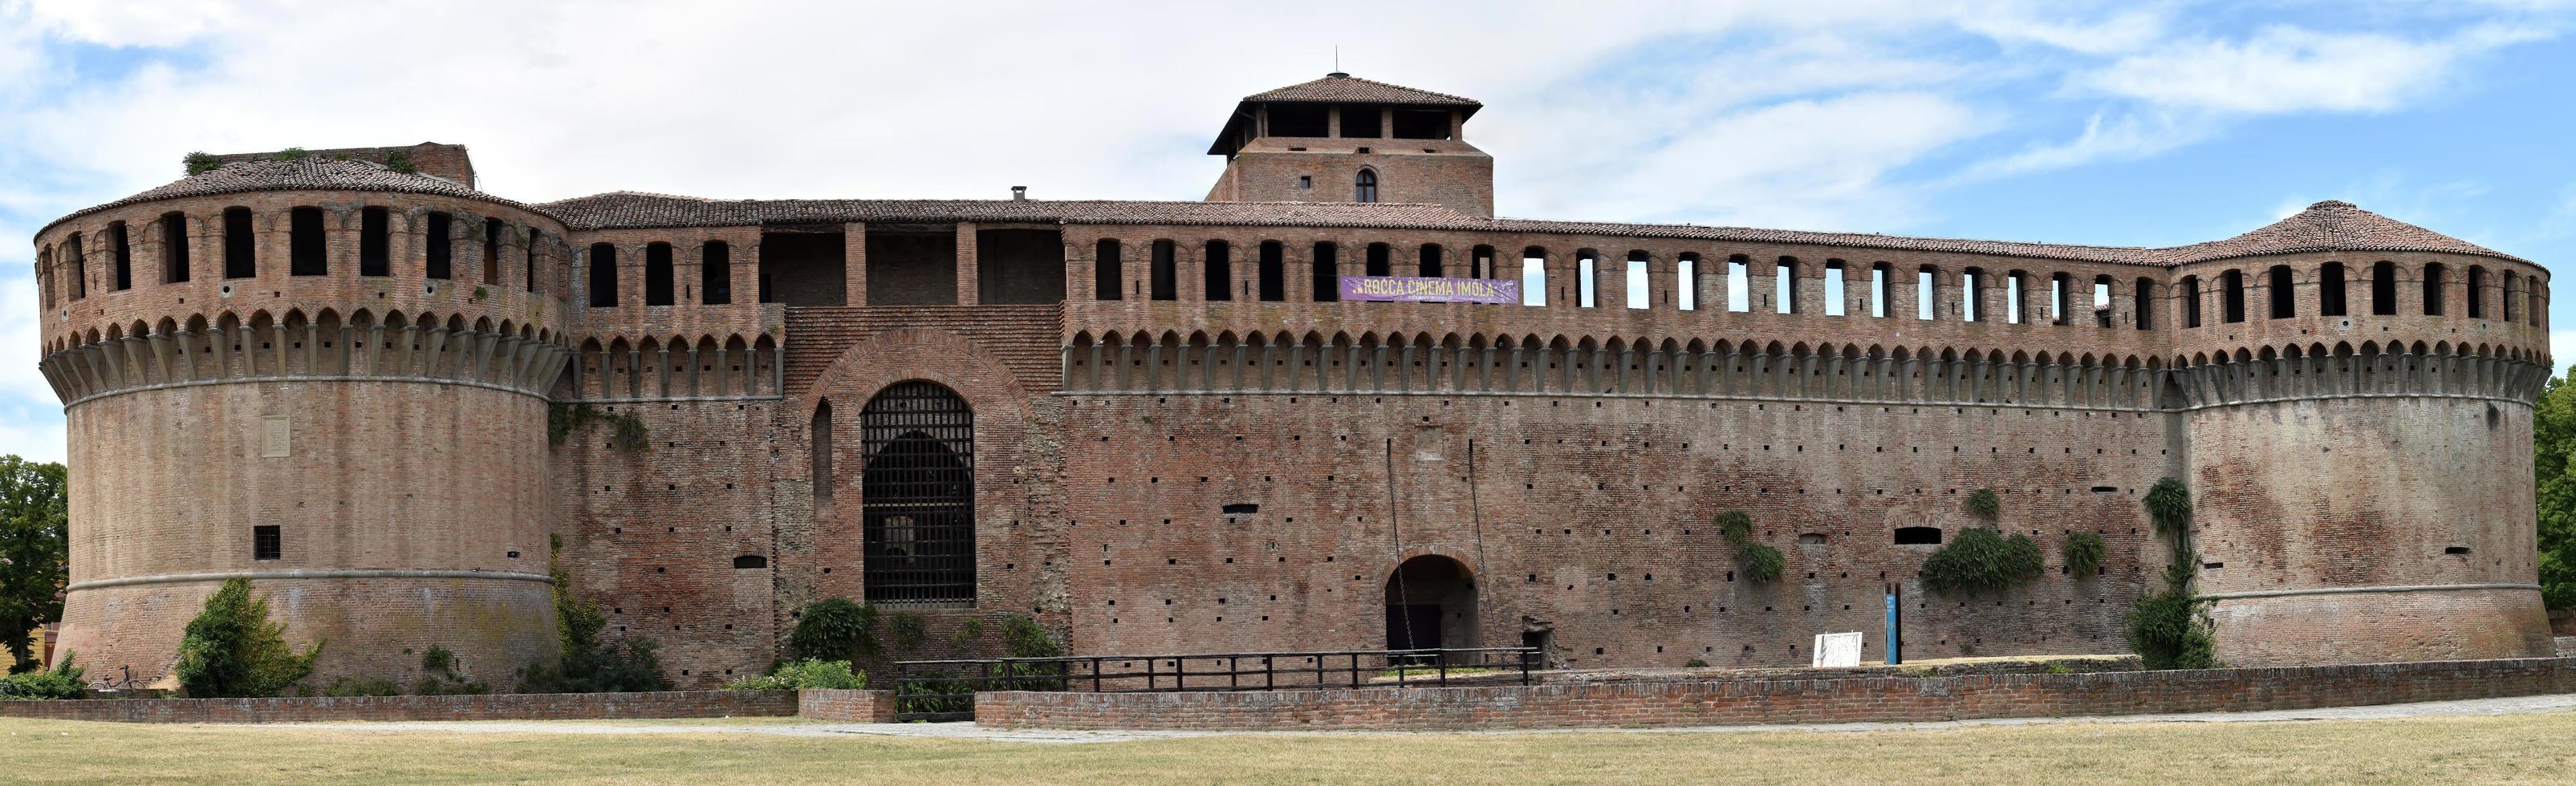 vista panorámica de la rocca sforzesca medieval en imola. fortaleza de imola. Bolonia, Italia foto